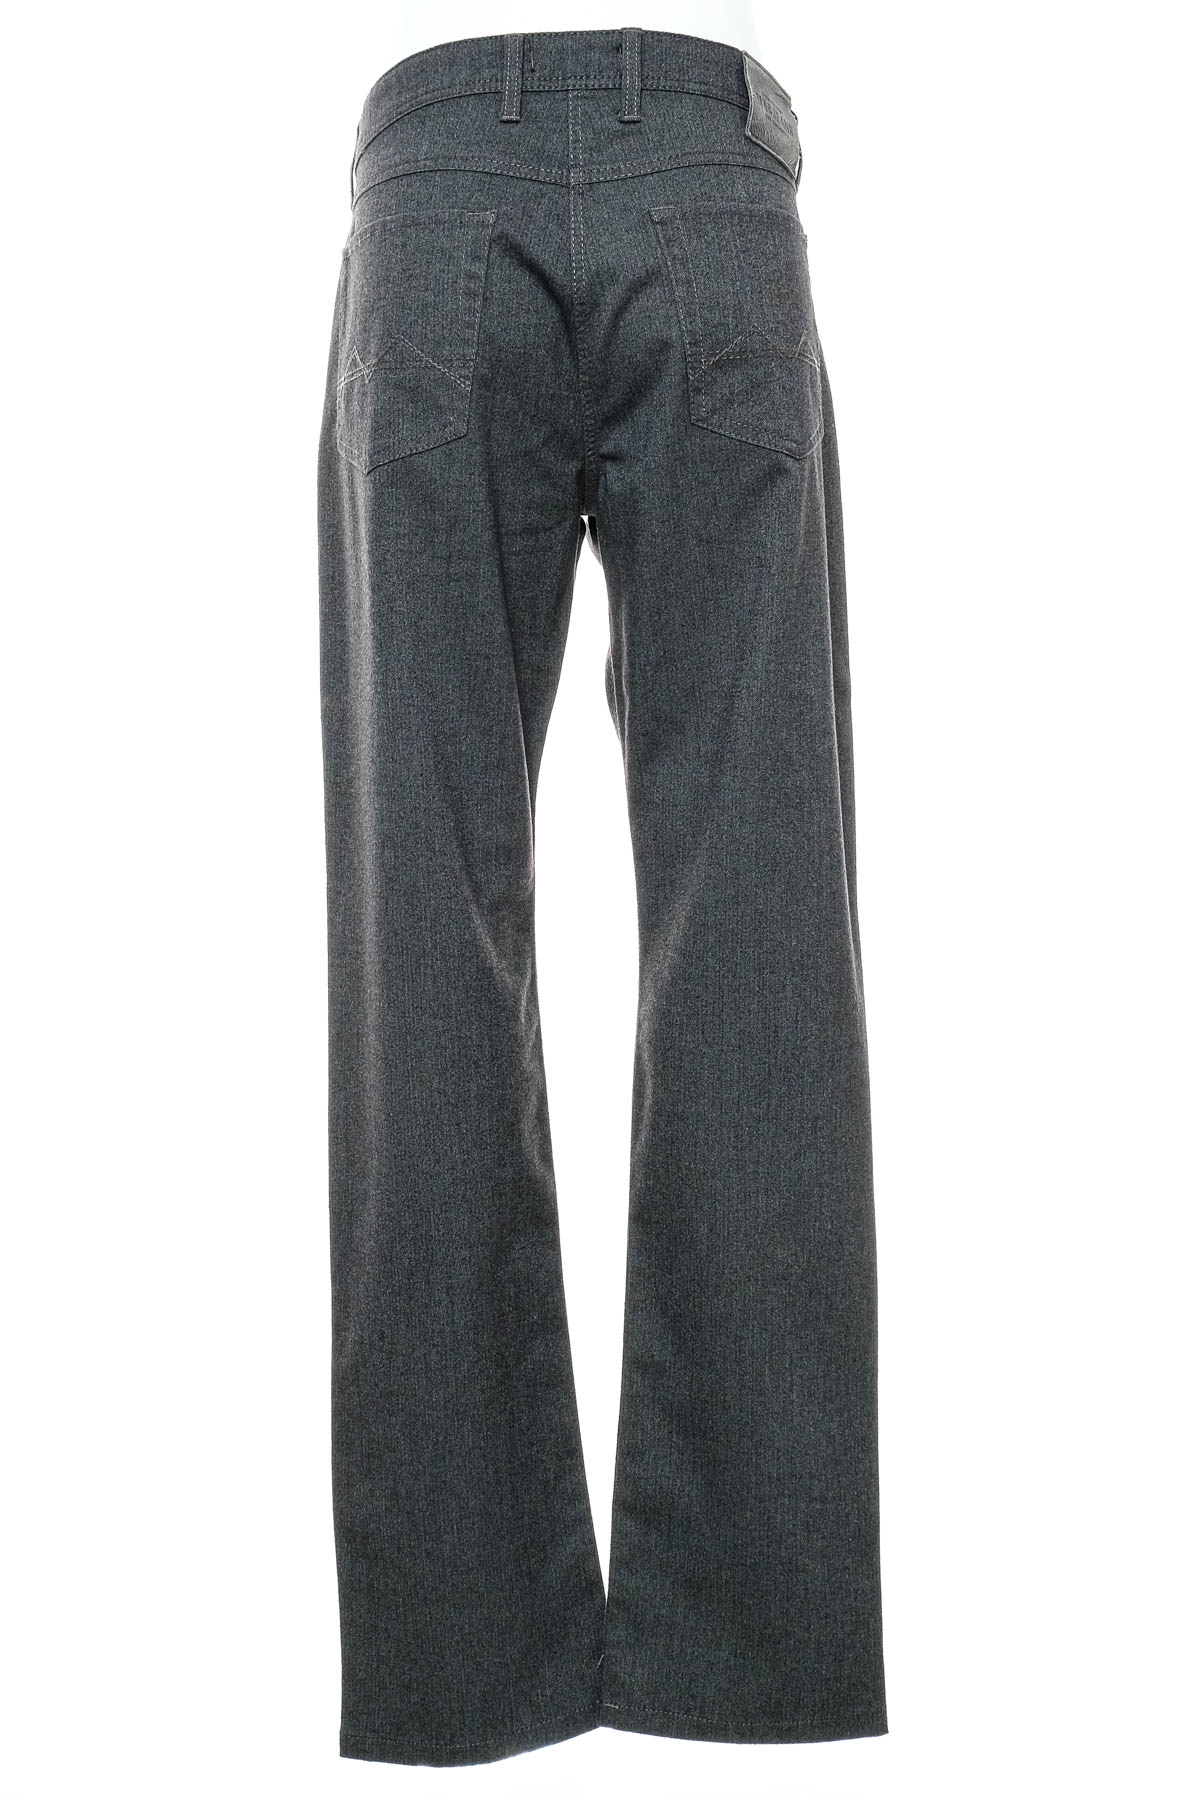 Pantalon pentru bărbați - MAC Jeans - 1